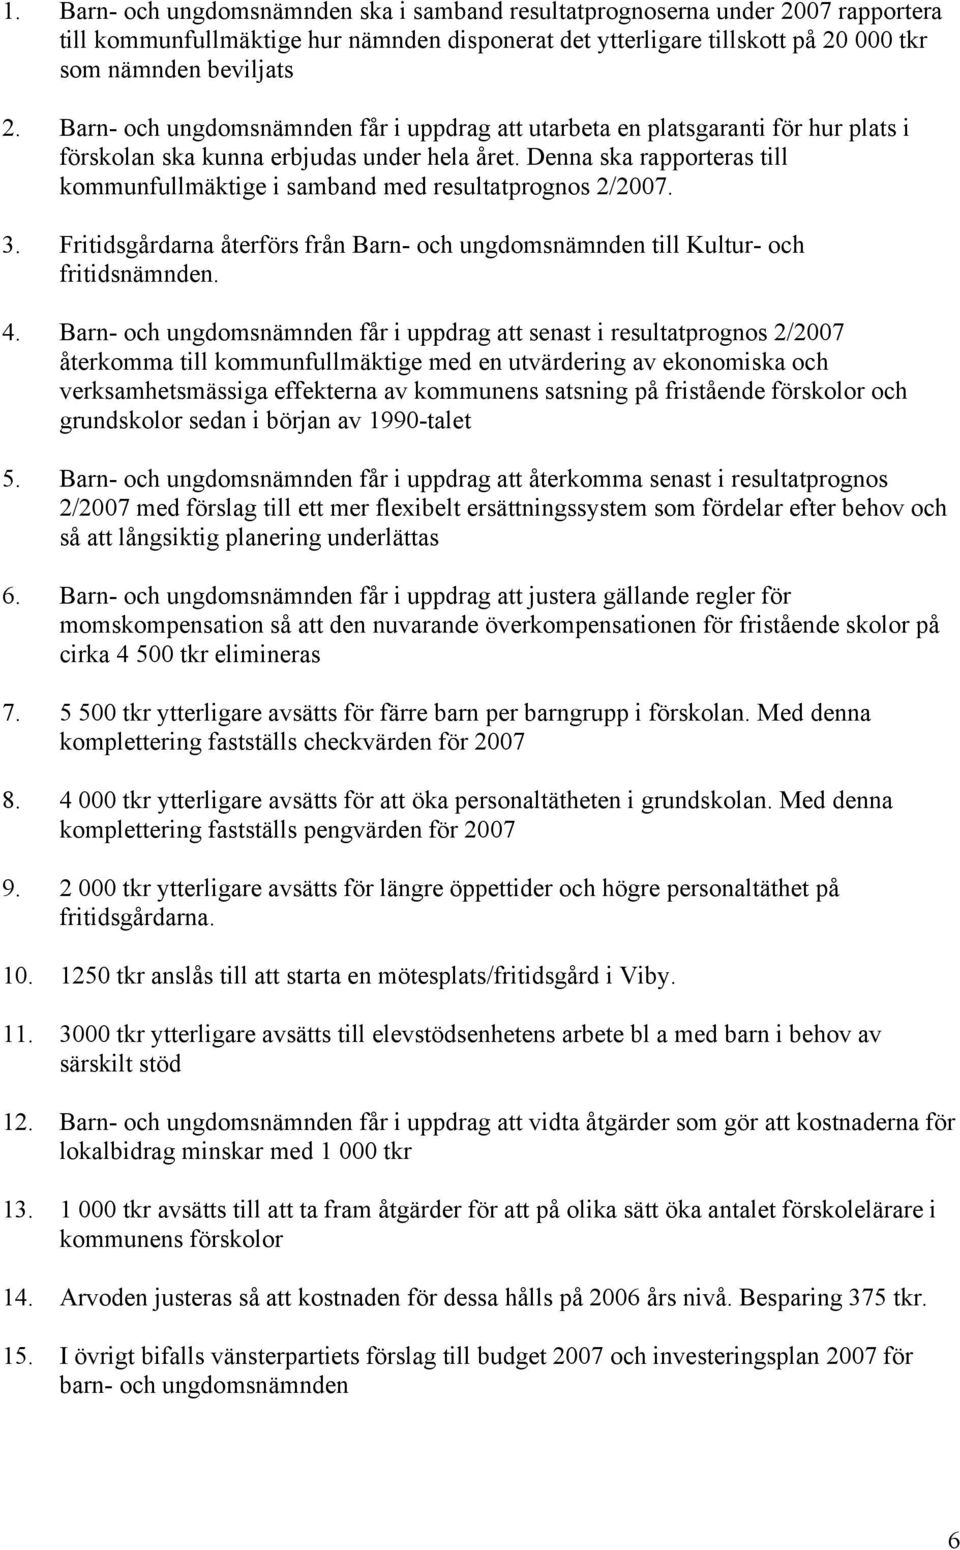 Denna ska rapporteras till kommunfullmäktige i samband med resultatprognos 2/2007. 3. Fritidsgårdarna återförs från Barn- och ungdomsnämnden till Kultur- och fritidsnämnden. 4.